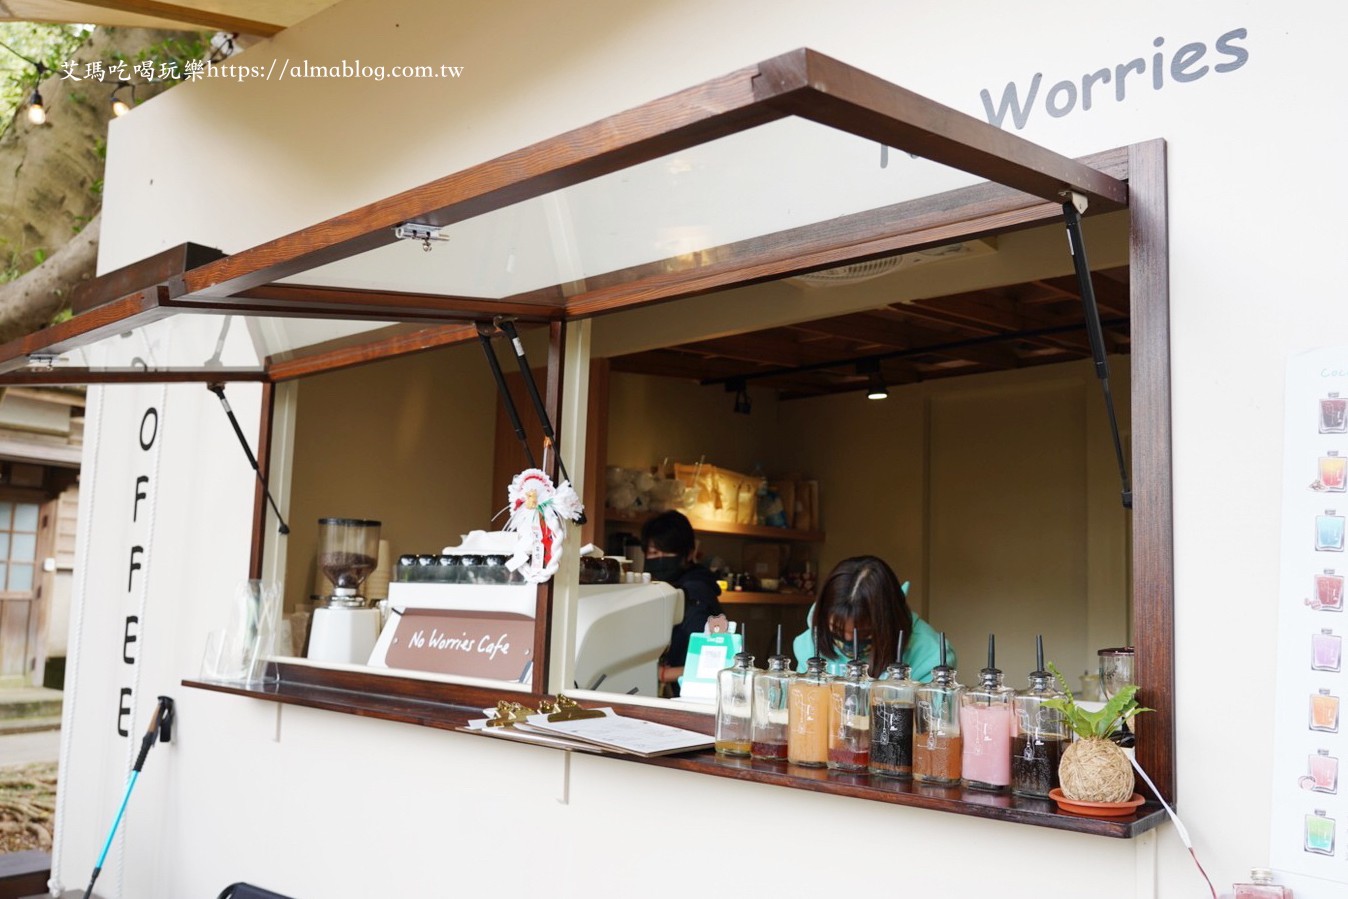 No worries Cafe